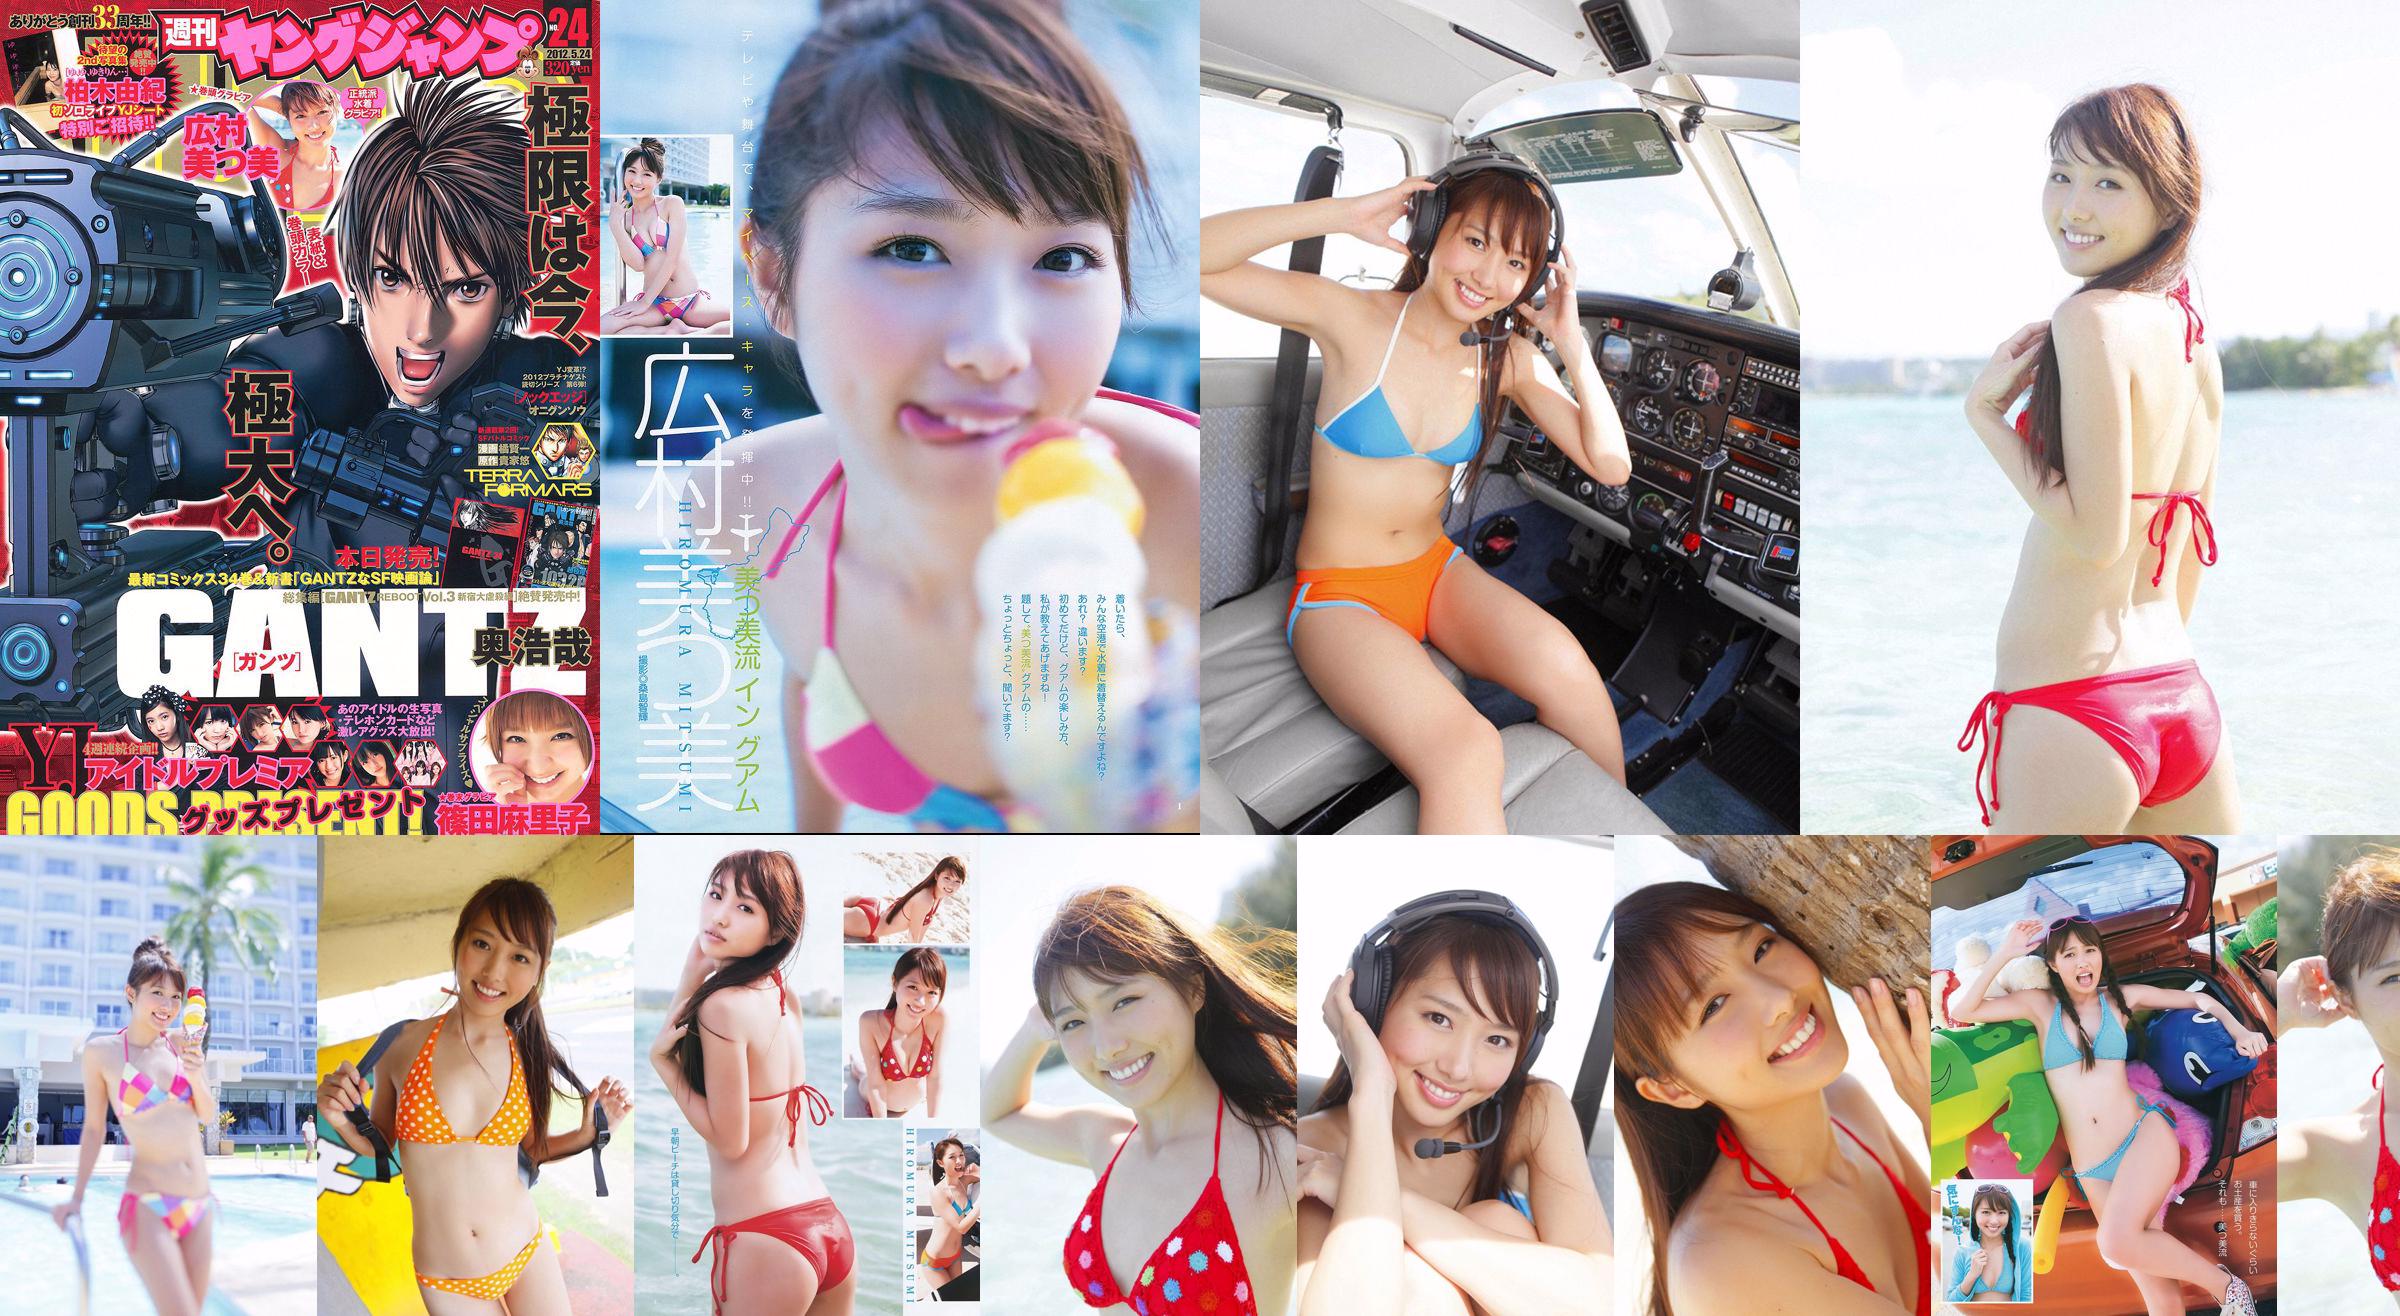 Mitsumi Hiromura Mariko Shinoda [Young Jump semanal] 2012 No.24 Photo Magazine No.20ead0 Página 1